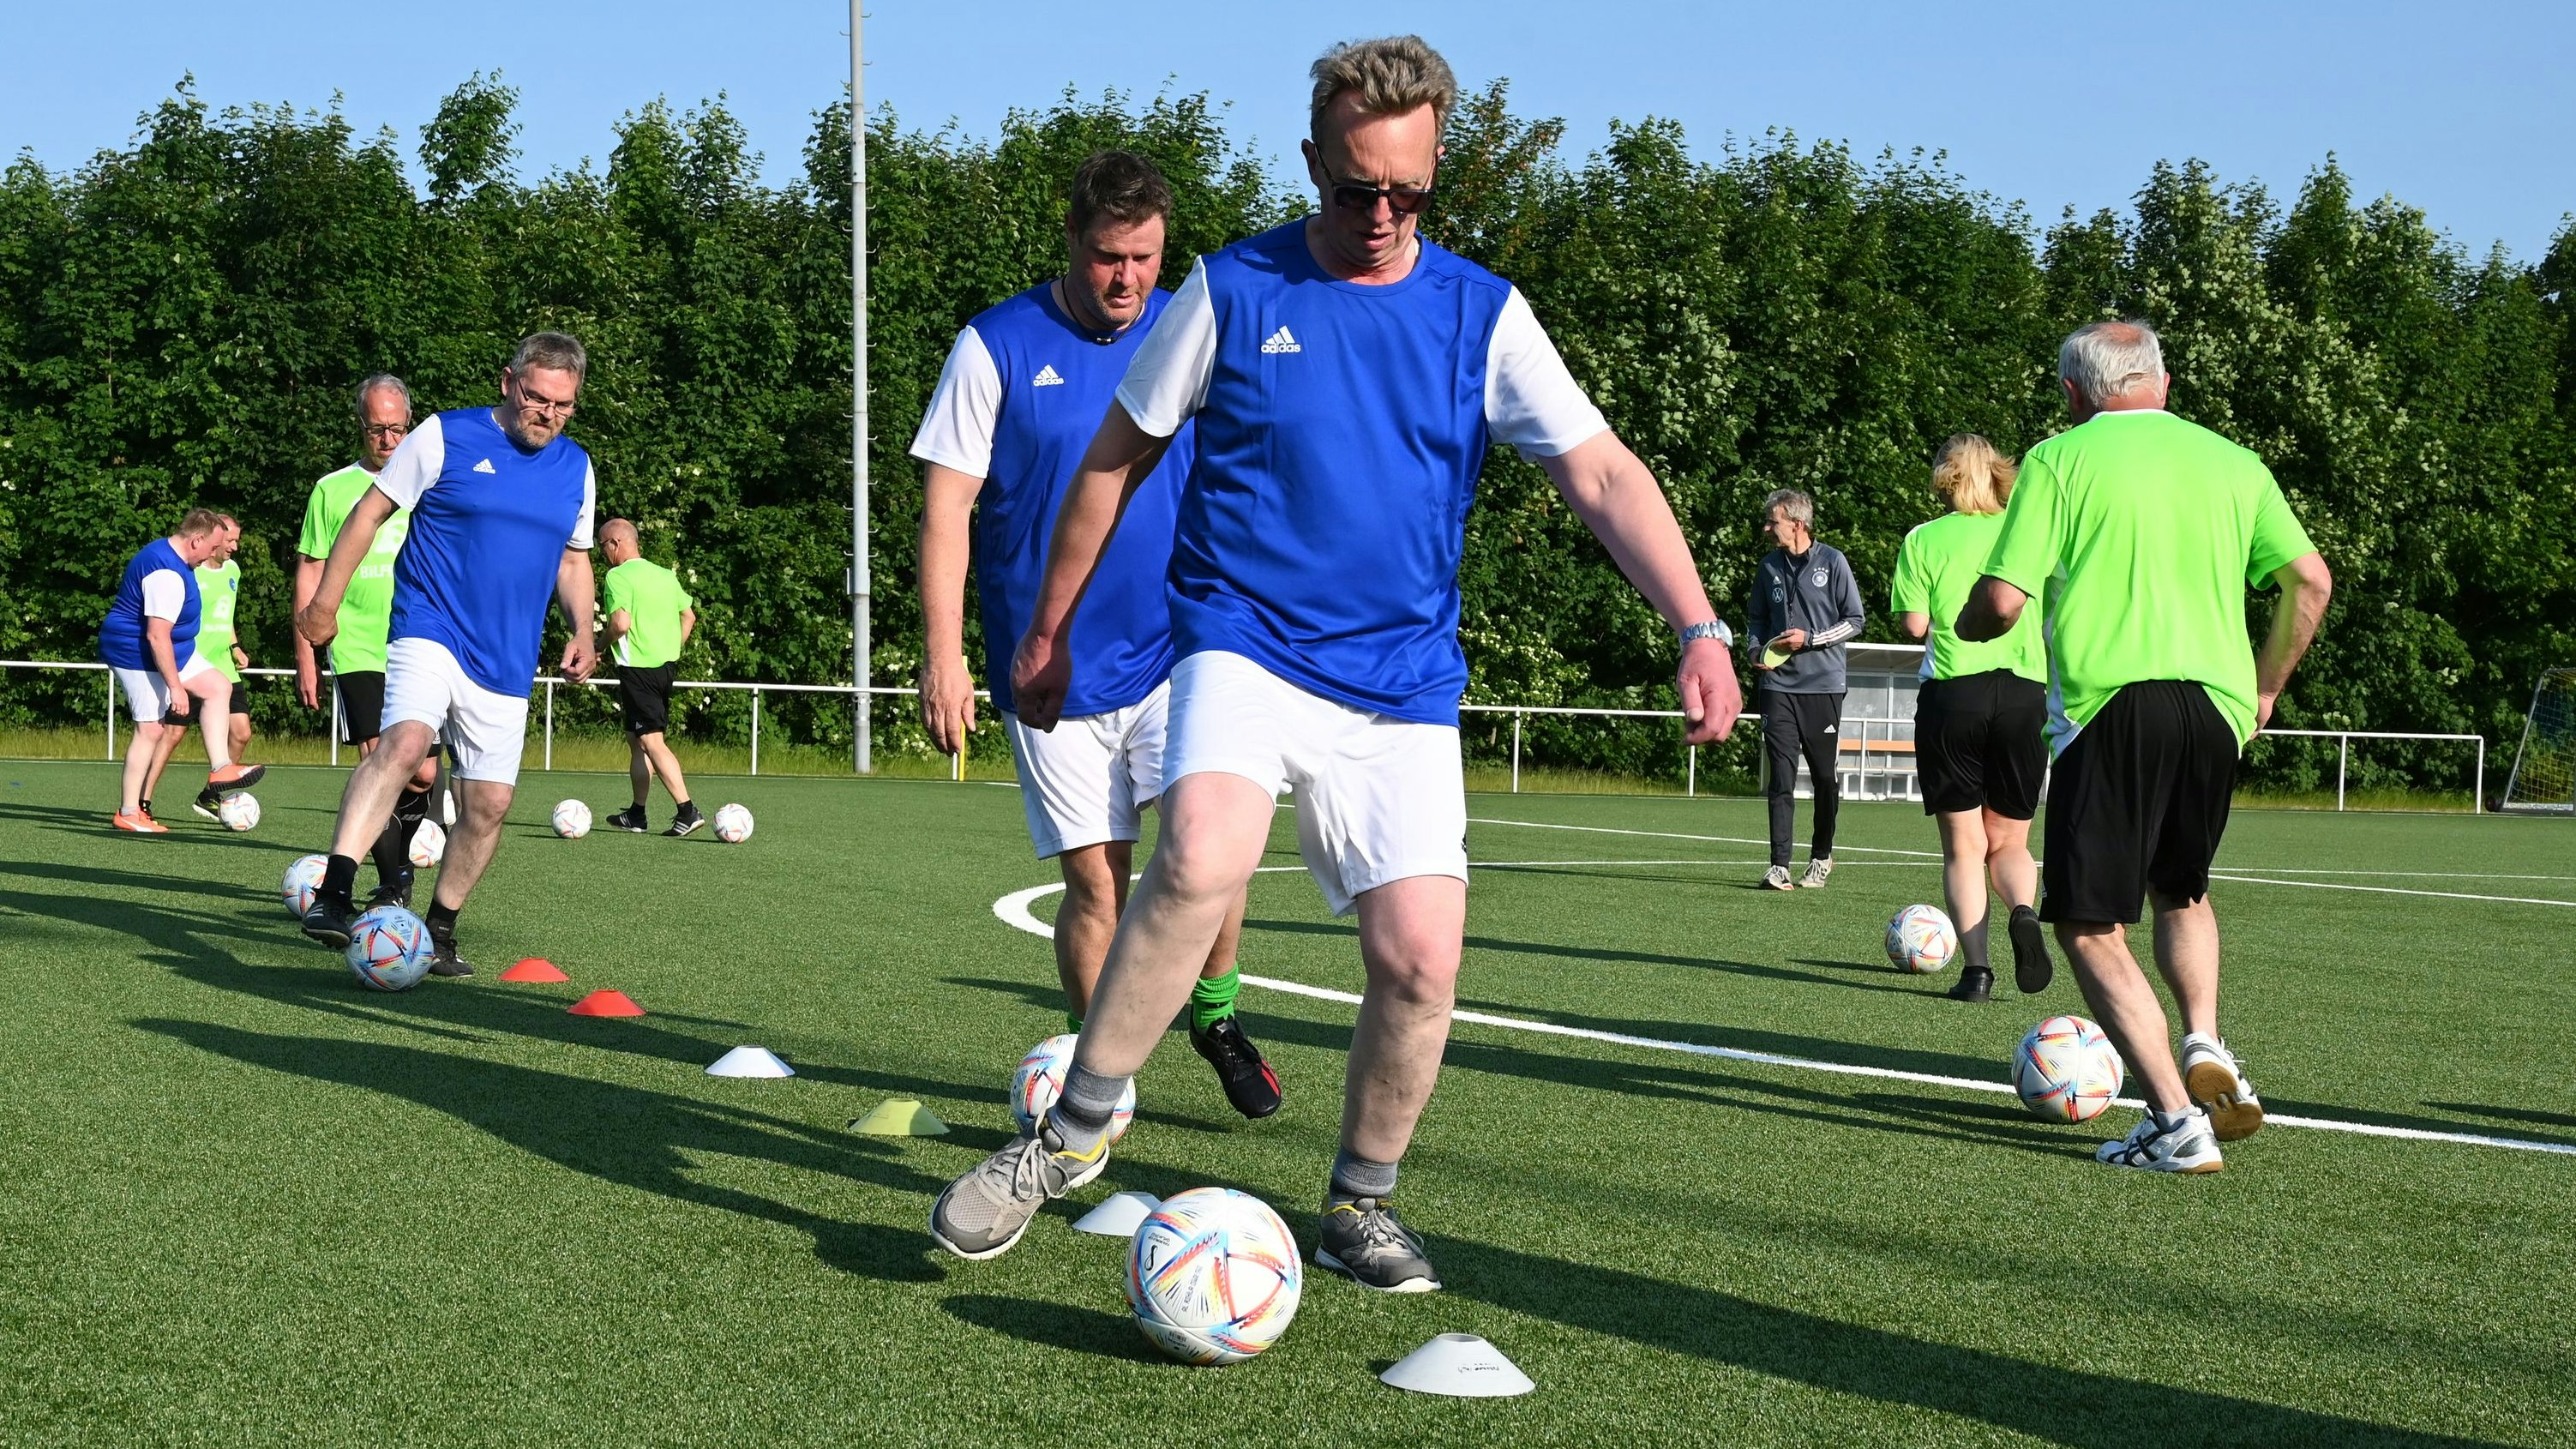 Fußball als Gesundheitssport: Die Teilnehmer trainieren und spielen ohne Wettkampfgedanken. Foto: Hermes